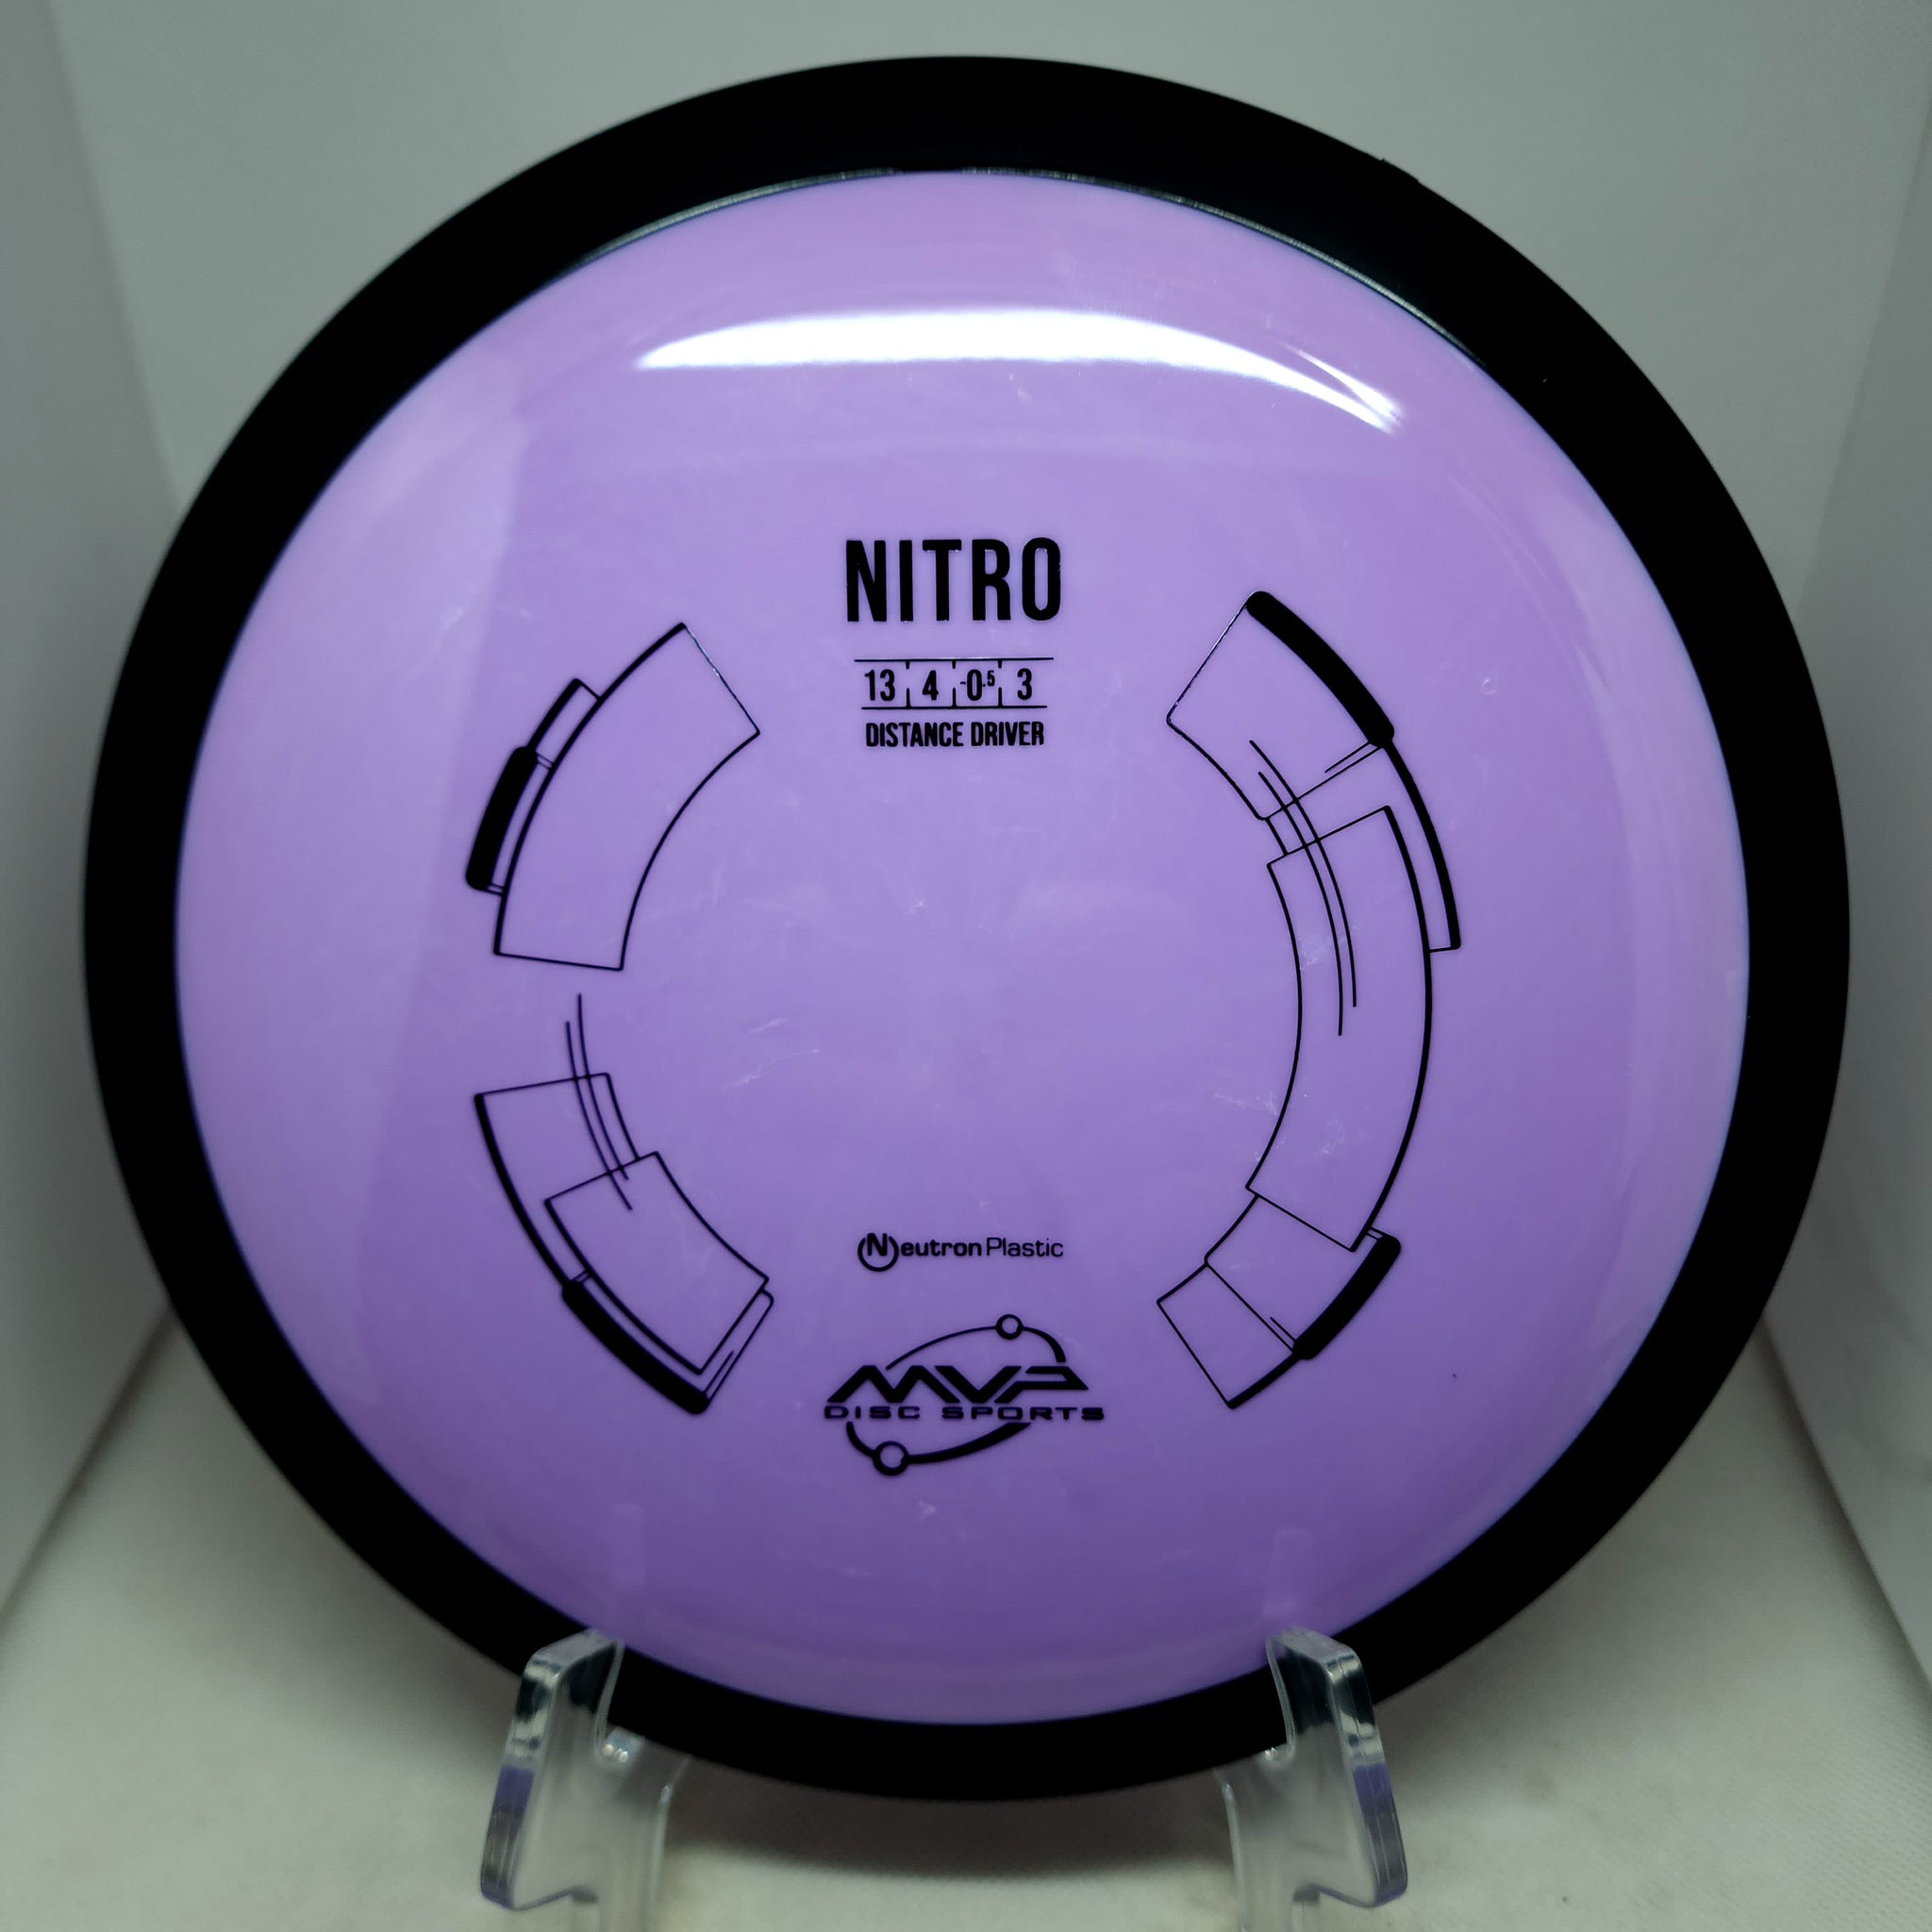 Nitro (Neutron)